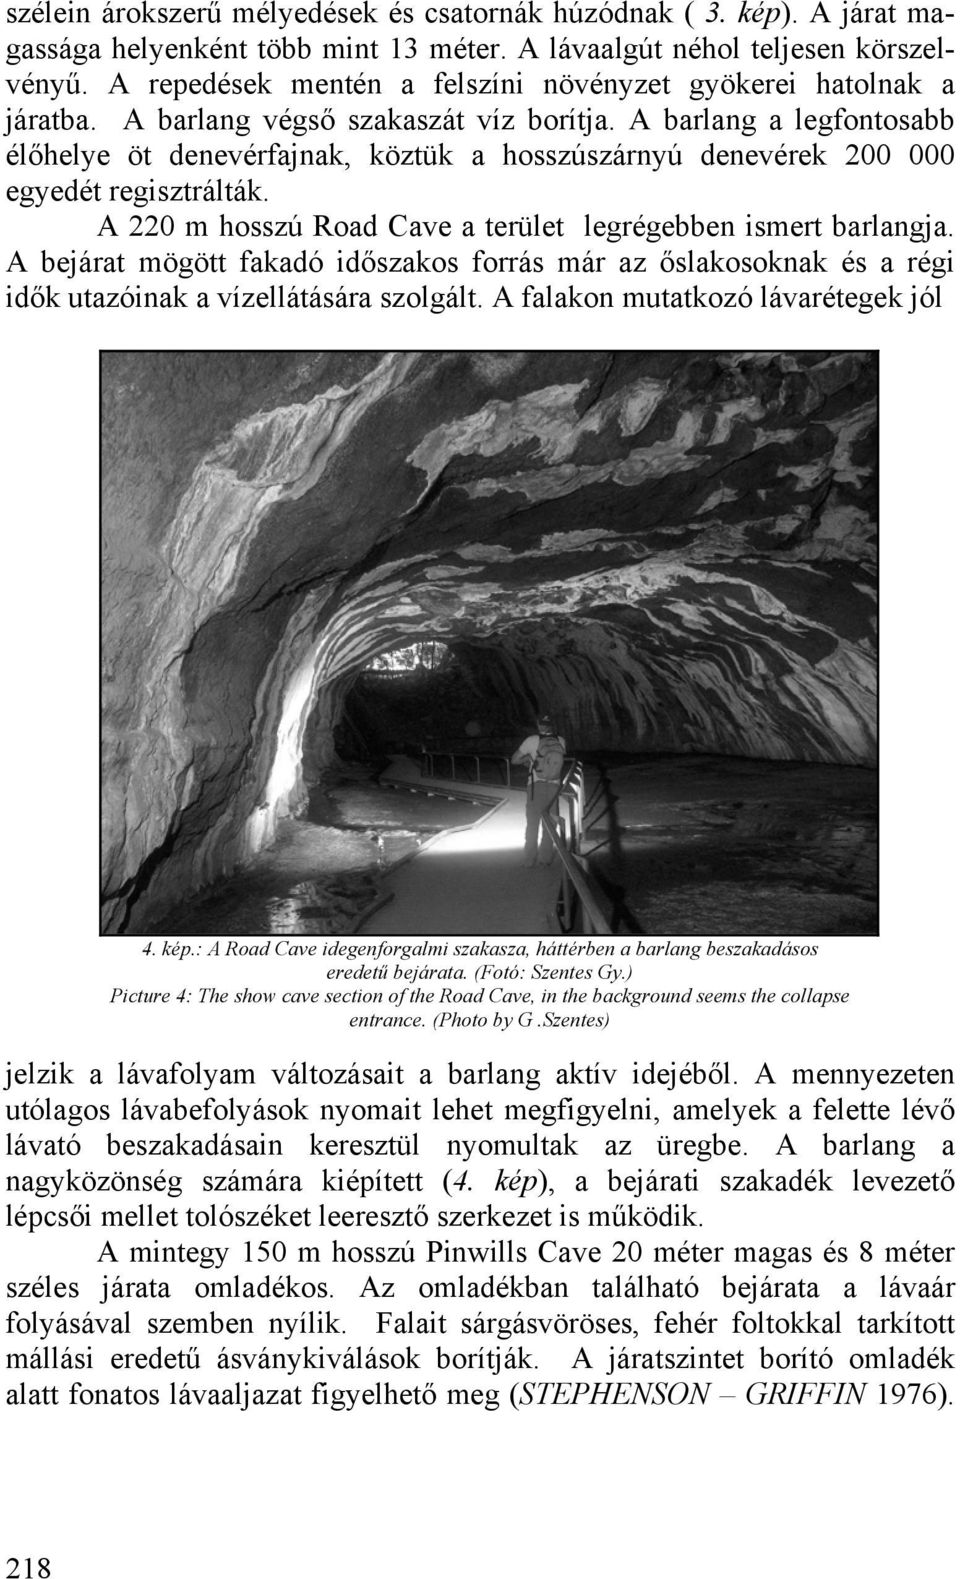 A barlang a legfontosabb élőhelye öt denevérfajnak, köztük a hosszúszárnyú denevérek 200 000 egyedét regisztrálták. A 220 m hosszú Road Cave a terület legrégebben ismert barlangja.